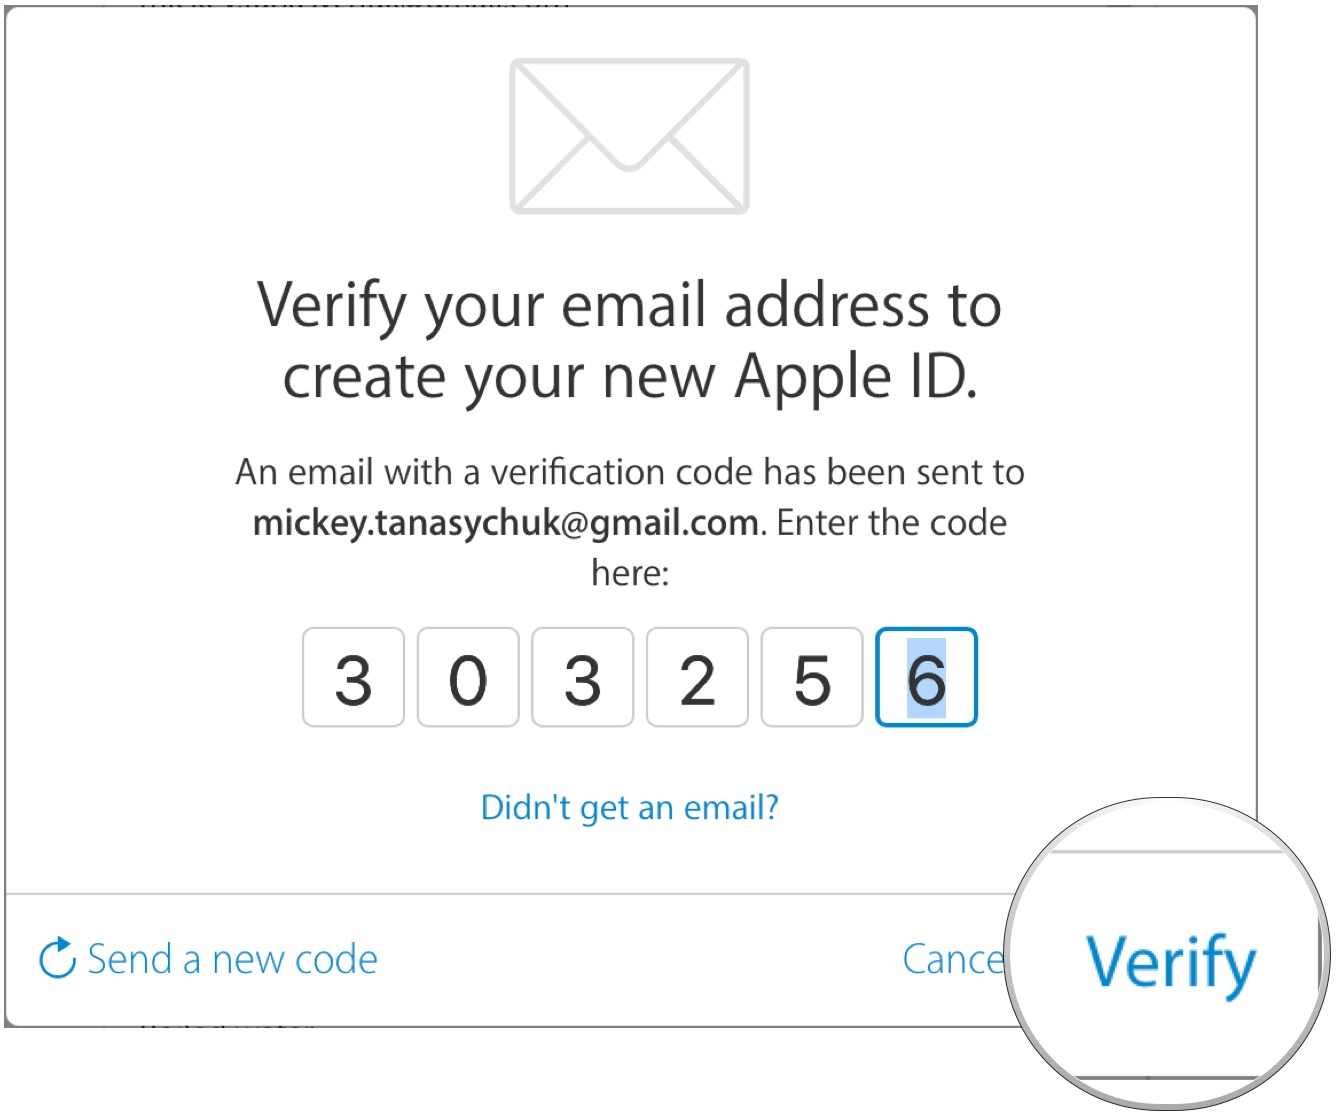 Enter the email verification code, click Verify